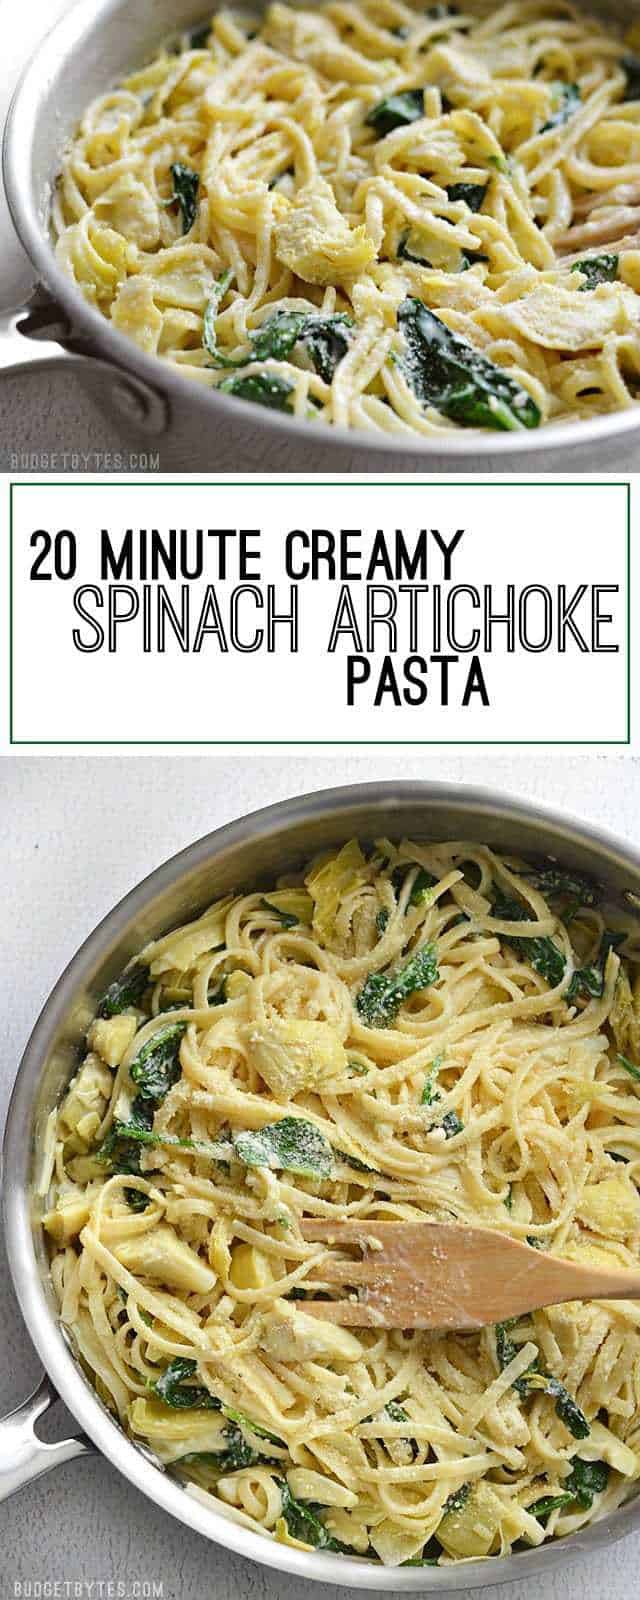 20 Minute Creamy Spinach Artichoke Pasta - BudgetBytes.com